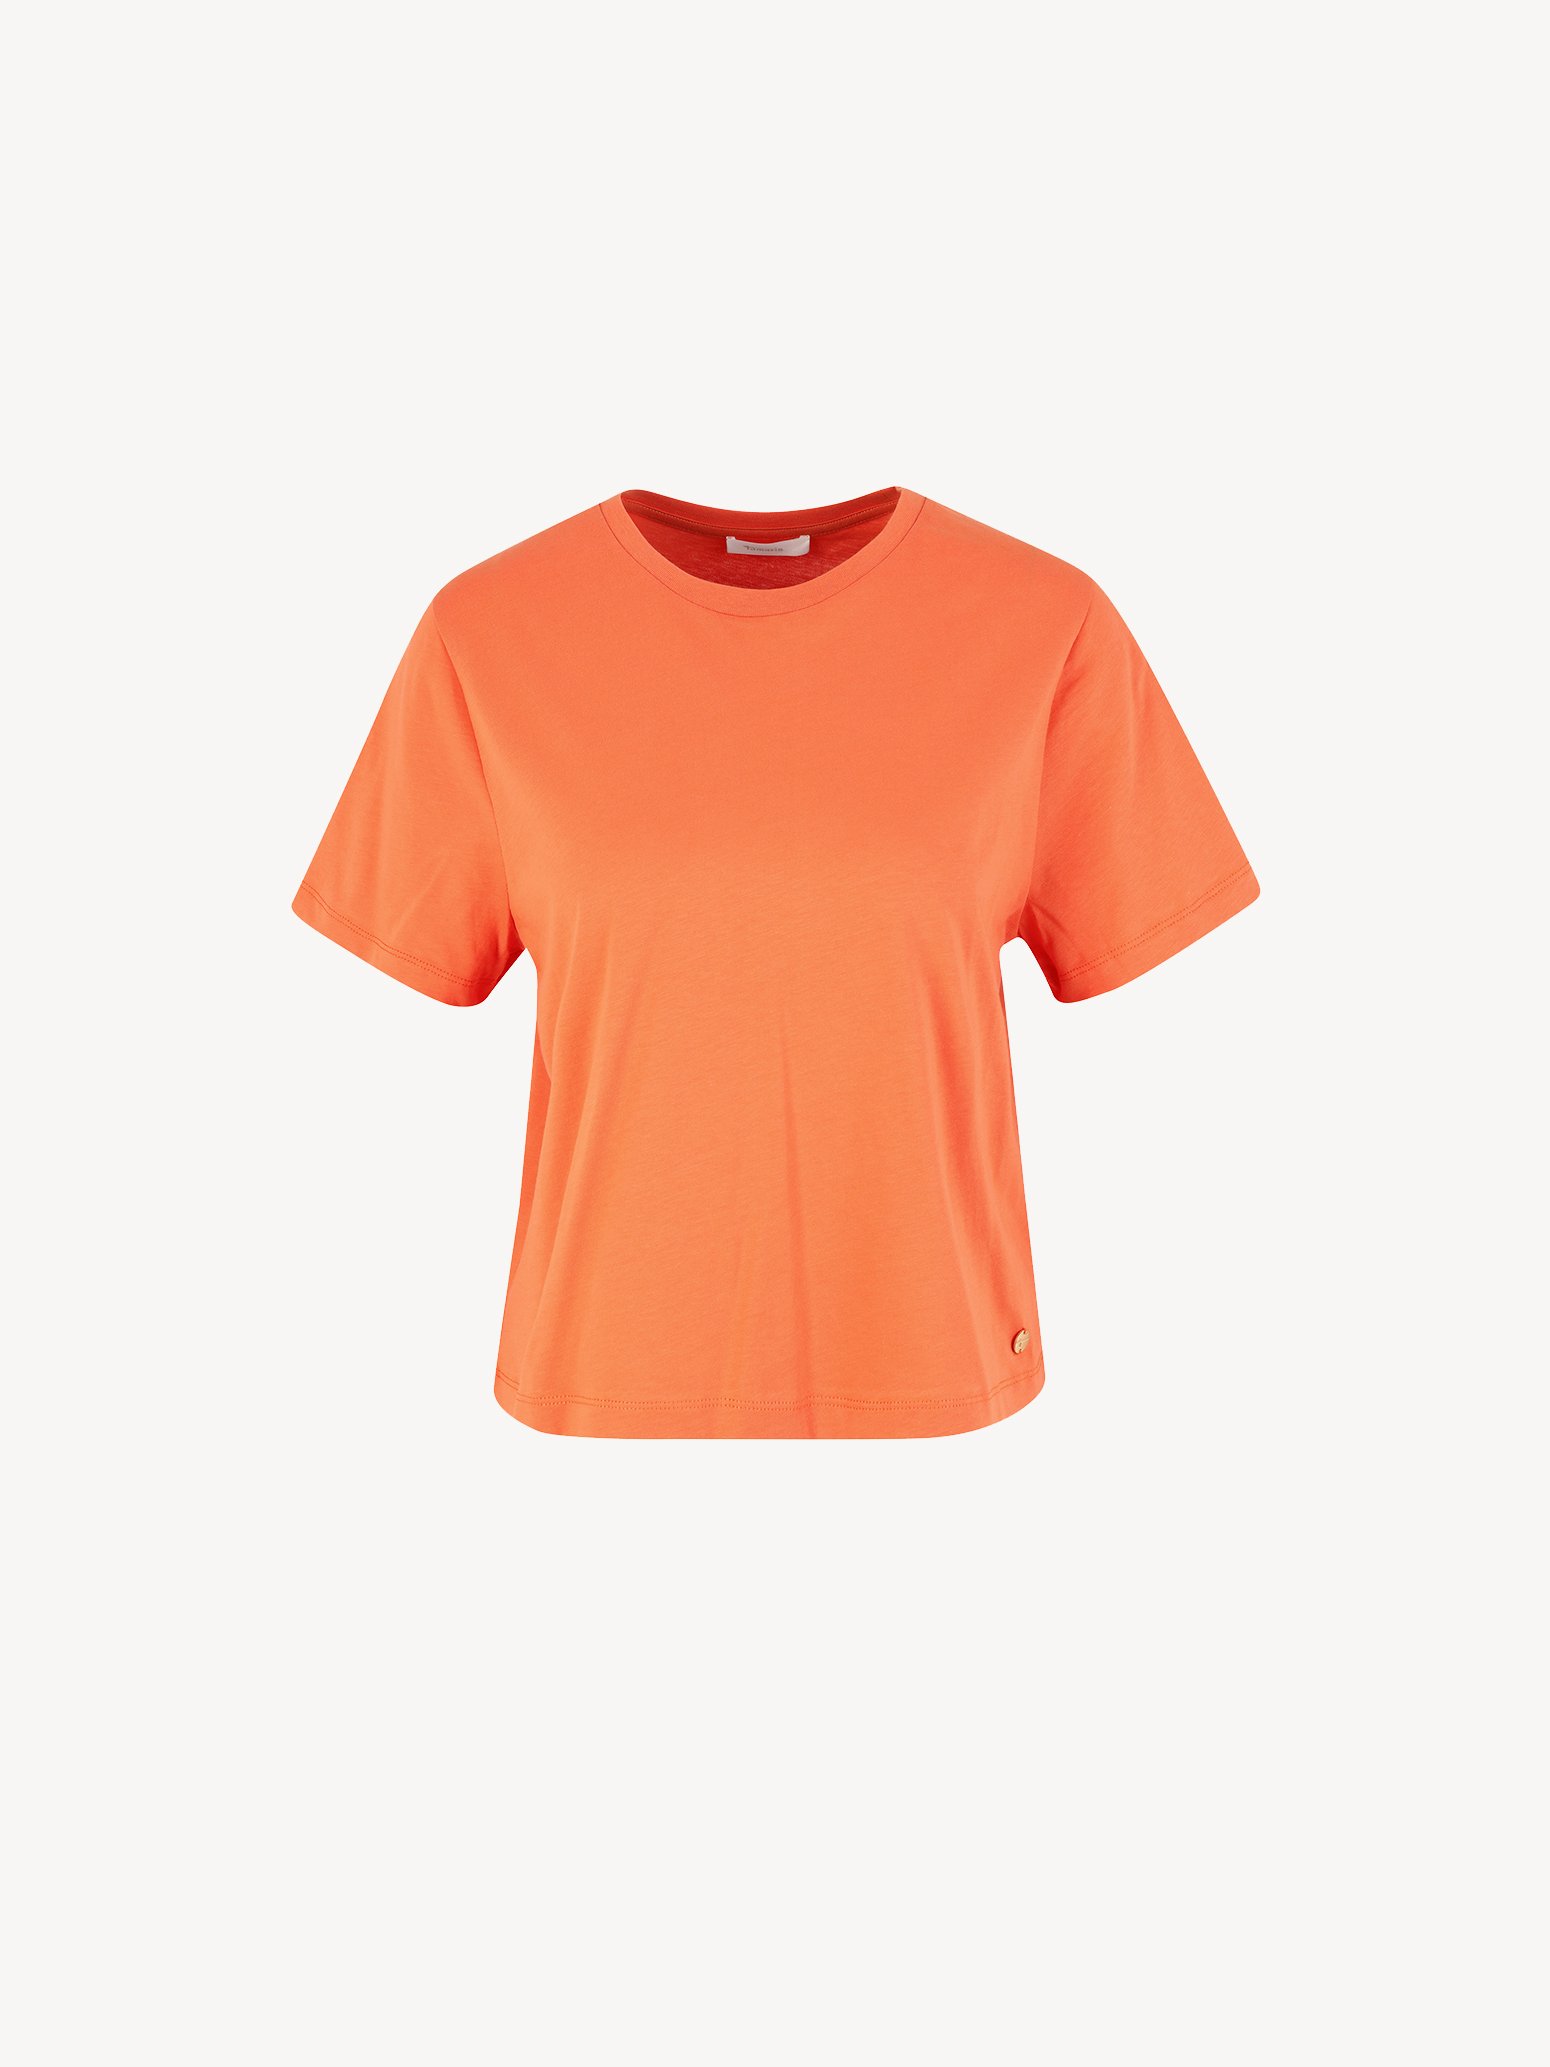 Tamaris Tops TAW0427-30035: - & kaufen! orange online T-shirt Shirts